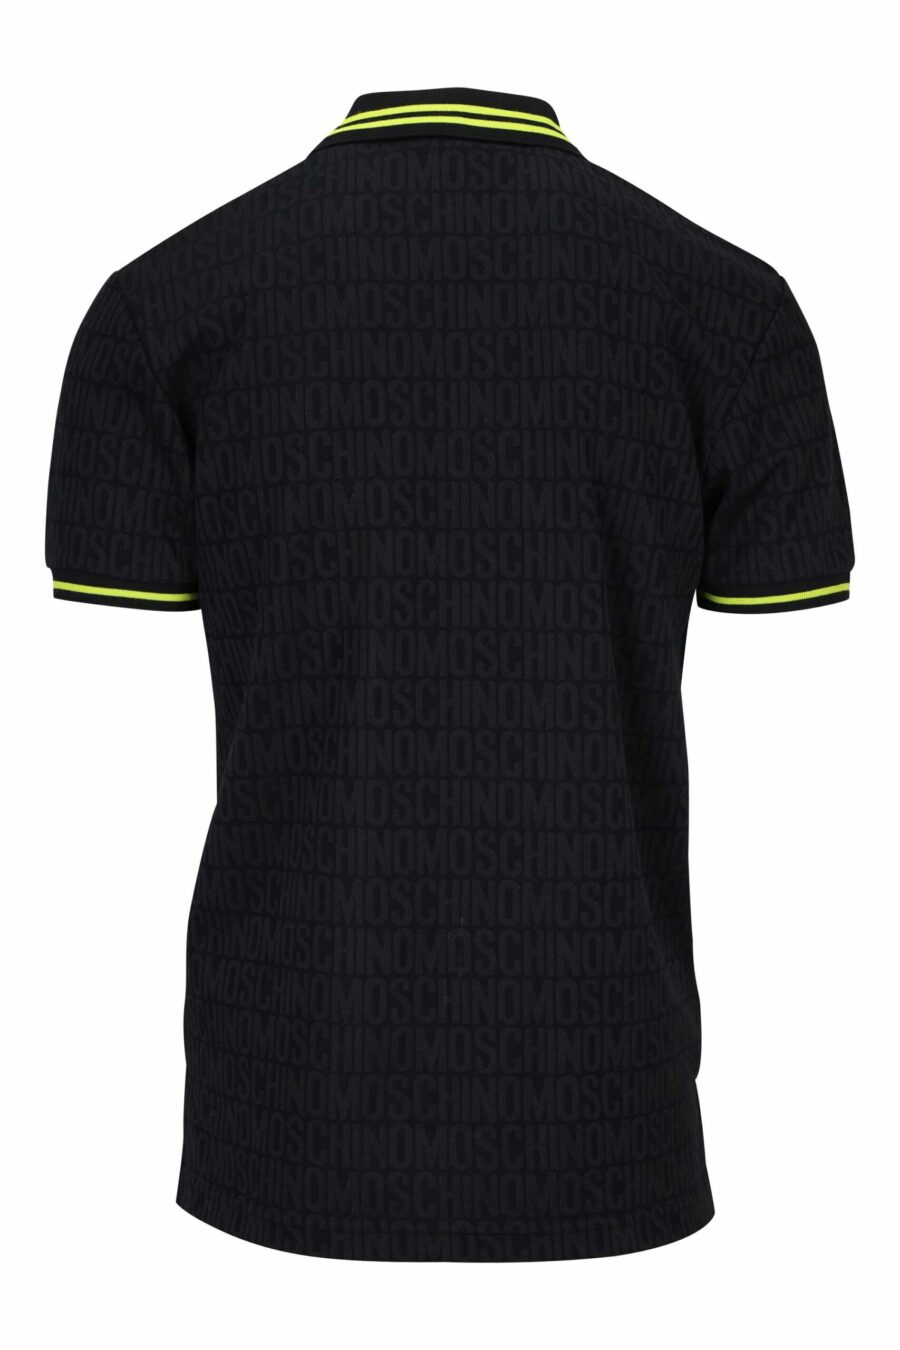 Schwarzes Poloshirt "all over logo" mit gelben Streifen - 667113466002 1 skaliert